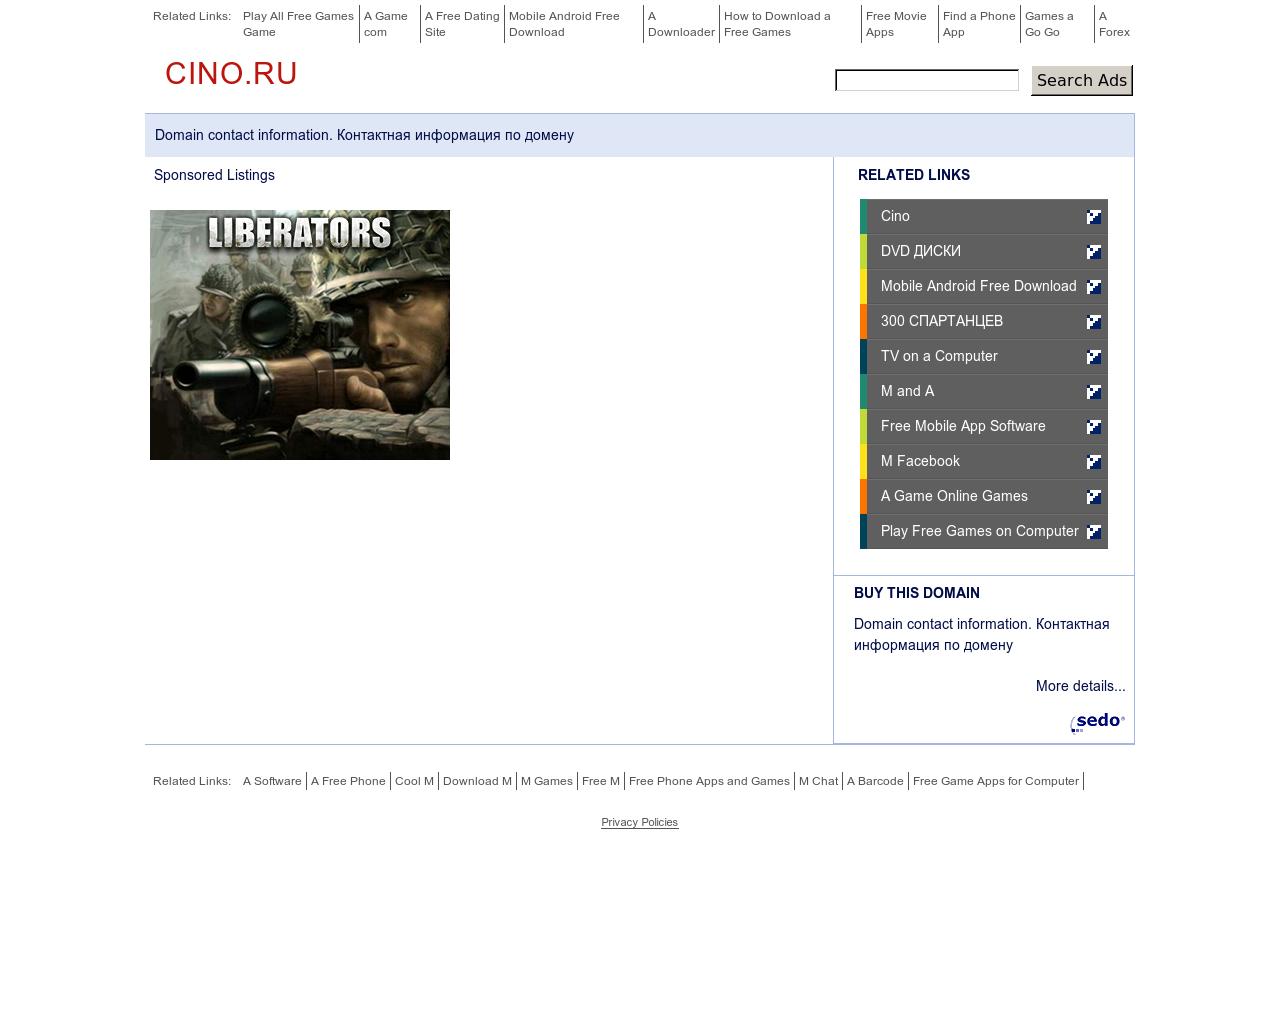 Изображение сайта cino.ru в разрешении 1280x1024